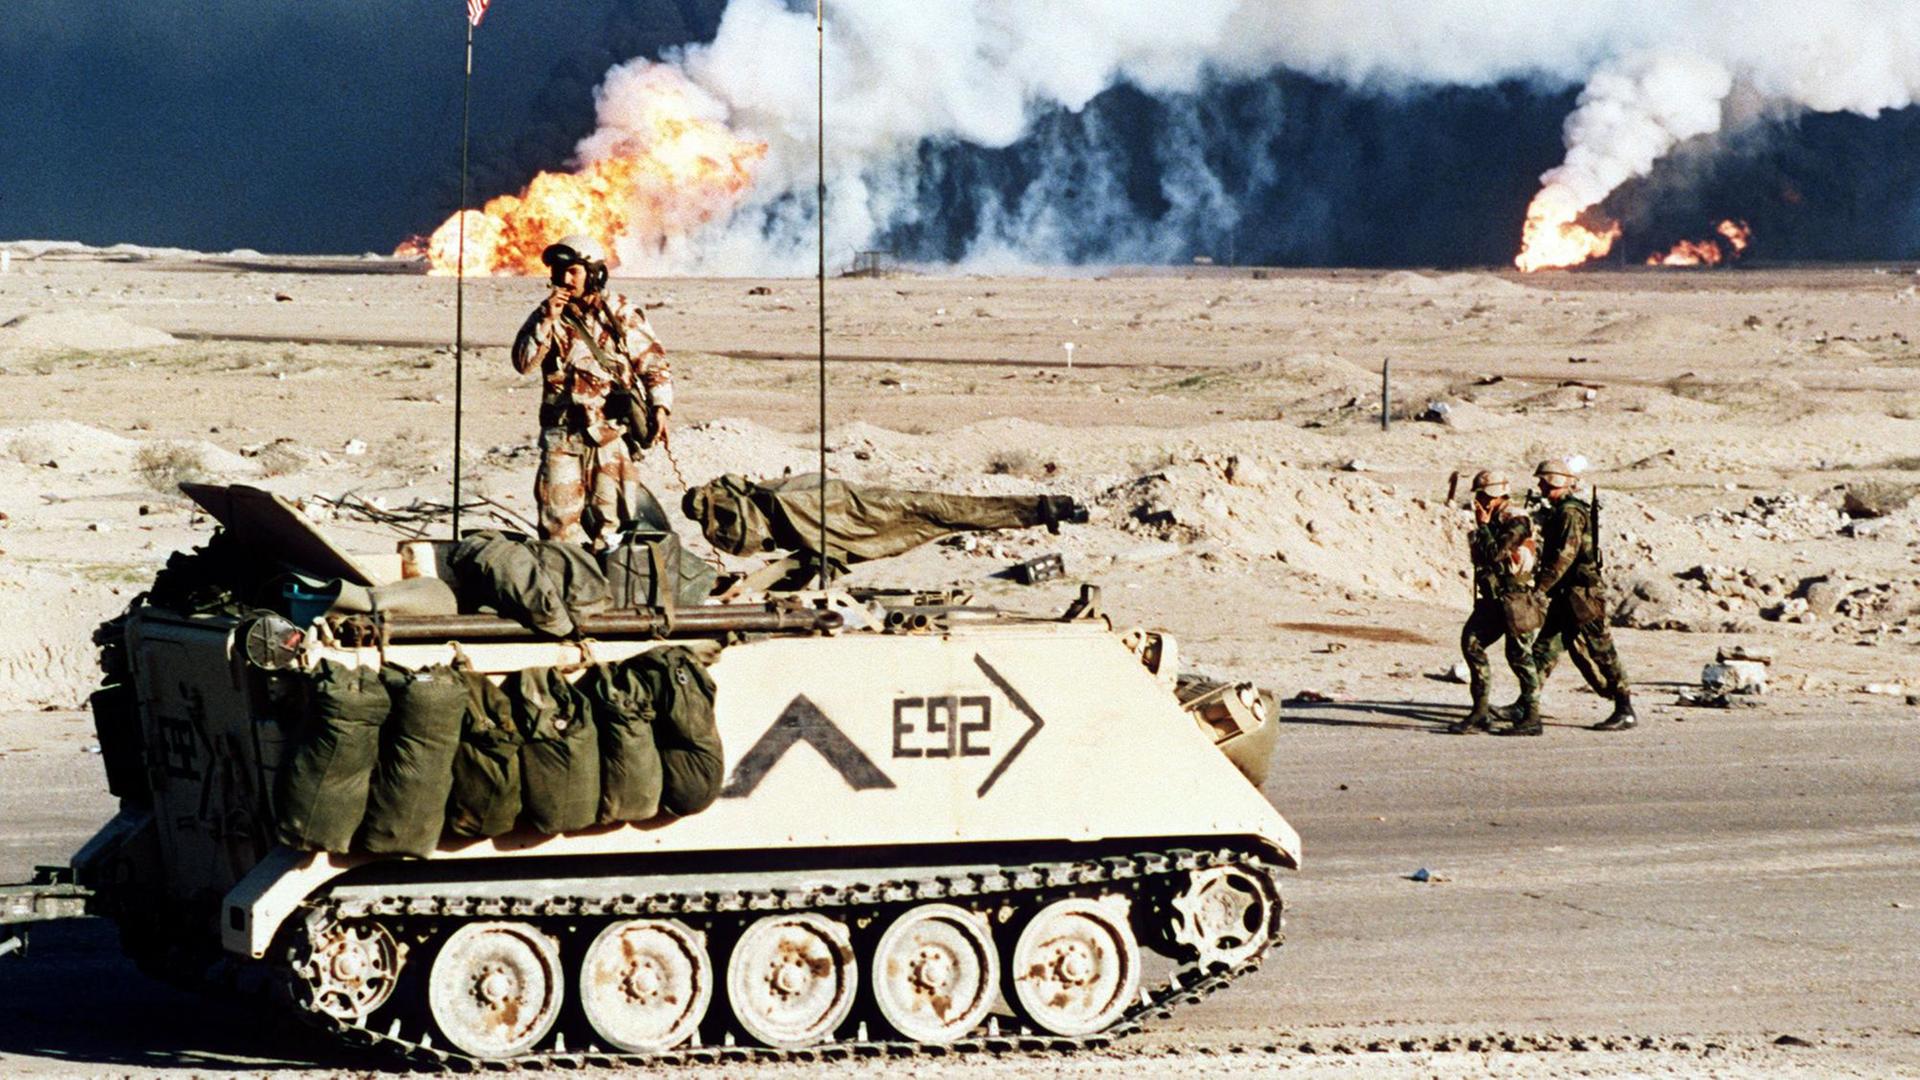 Golfkrieg von 1991 - US-Streitkräfte: Ein amerikanischer Schützenpanzer vor brennenden Ölfeldern nahe der kuwaitisch-irakischen Grenze am 2.3.1991. Die Golfkrise hatte am 2.8.1990 mit dem Einmarsch irakischer Truppen nach Kuwait begonnen. Der UN-Sicherheitsrat forderte daraufhin am 29.11.1990 den Irak auf, seine Truppen bis zum 15.1.1991 aus Kuwait zurückzuziehen. Nach Ablauf des UN-Ultimatums begannen am 17.1.1991 alliierte Streitkräfte unter der Führung der USA mit der Bombardierung Bagdads. Der Golfkrieg endete nach dem Einlenken Iraks am 28.2. 1991 mit der Einstellung aller Kampfhandlungen. Am 20..3.2003 haben amerikanische und britische Truppen einen neuen Krieg gegen den Irak begonnen.